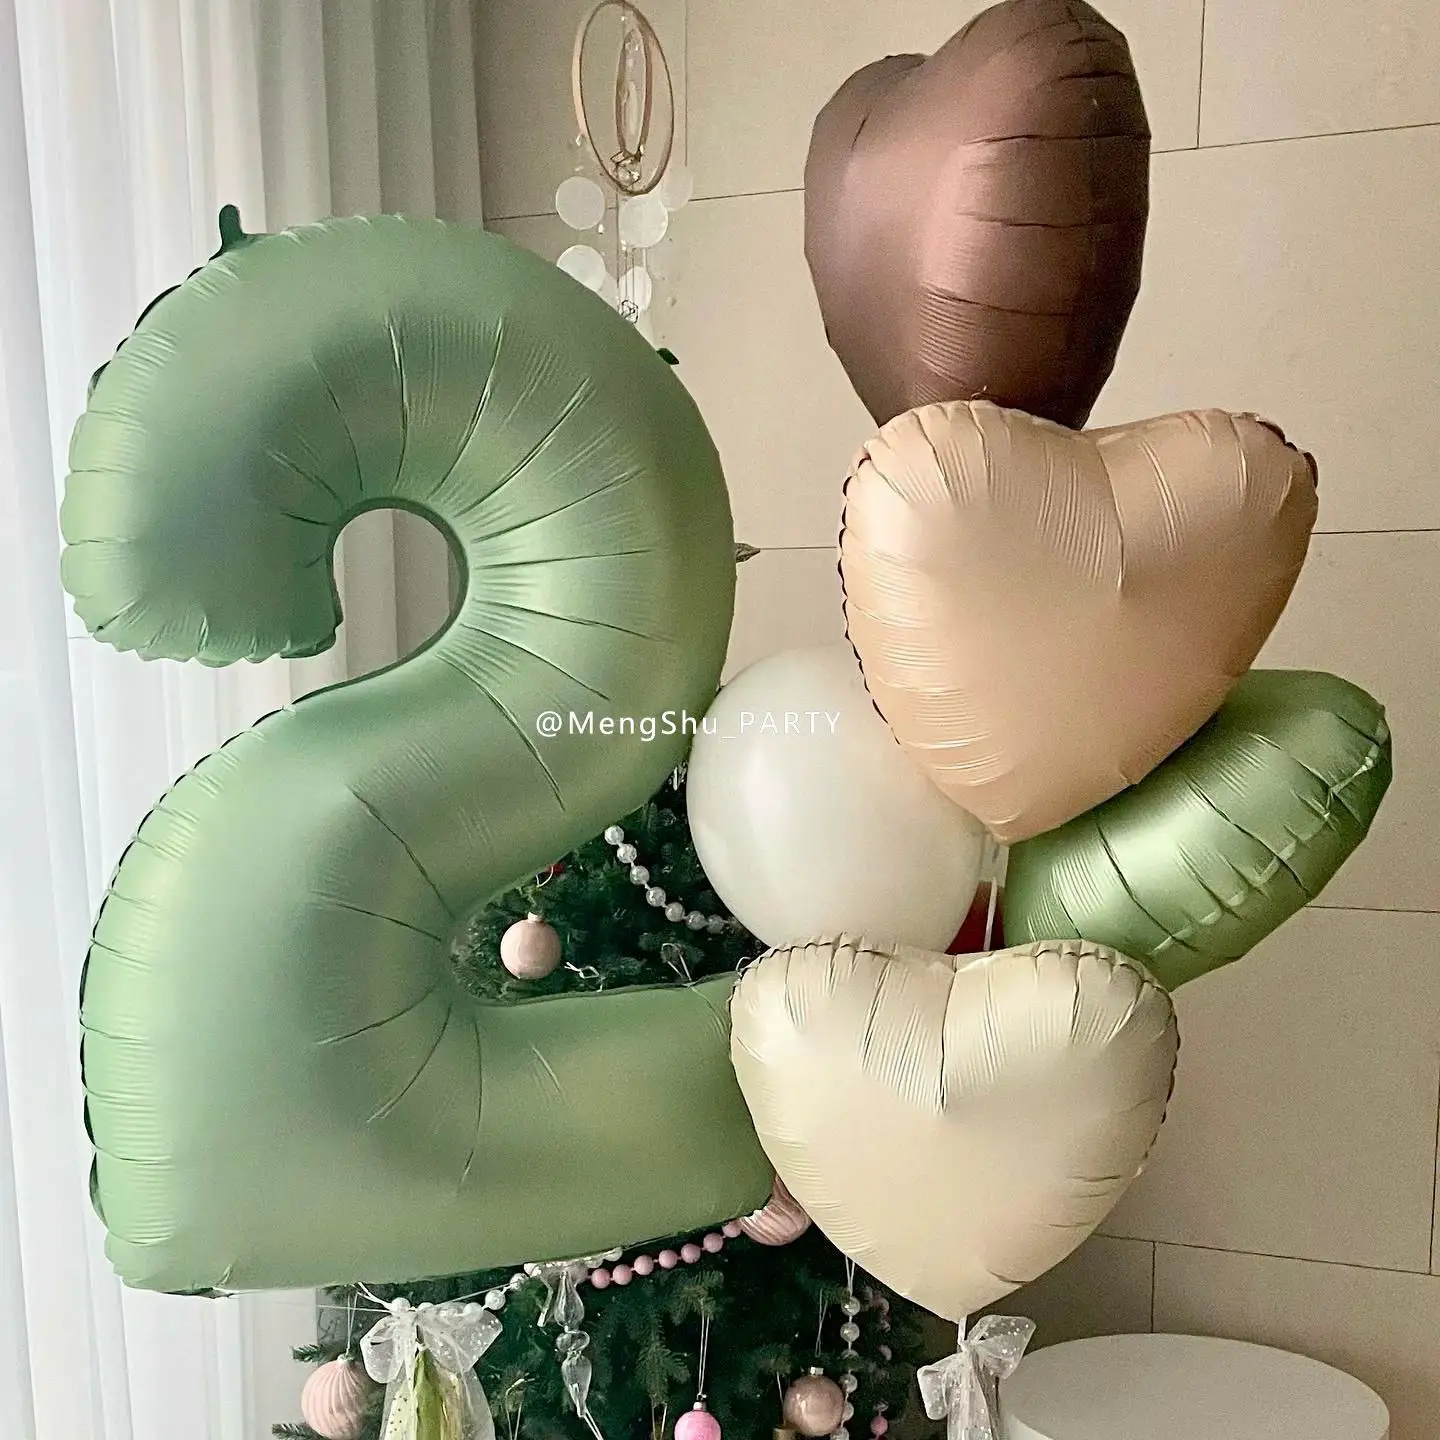 40 дюймов оливково-зеленый 0 1 2 3 4 5 6 7 8 9 Globos Гелиевый шар из фольги в виде цифр воздушный шар джунгли сафари для дня рождения